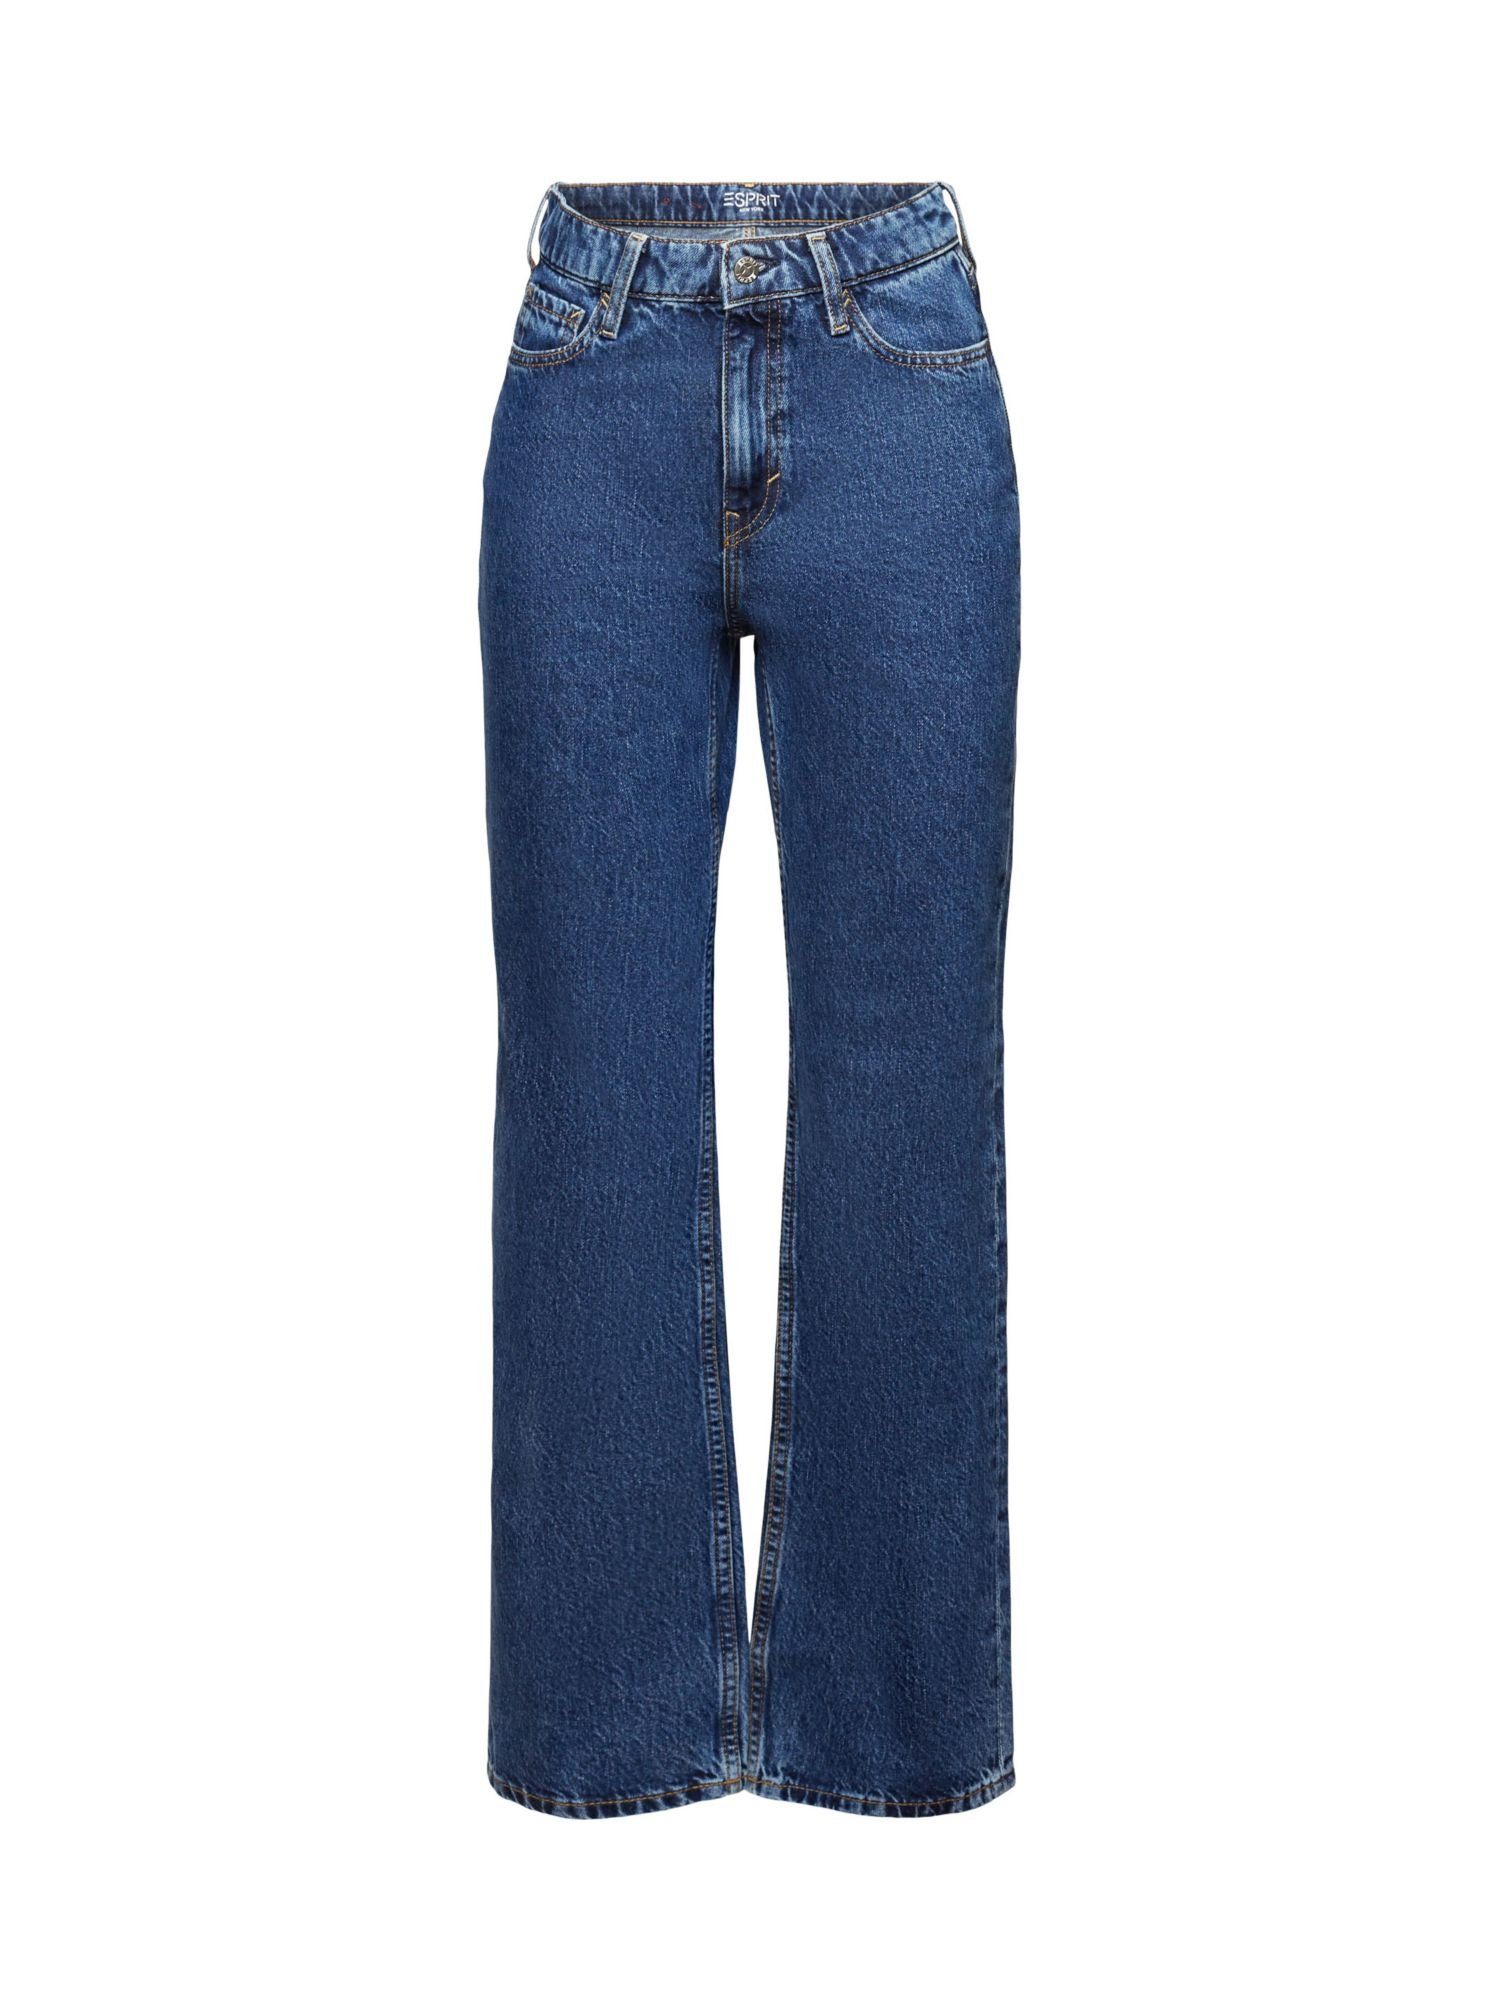 Straight-Jeans Retro-Jeans hohem Passform Esprit und mit Bund gerader